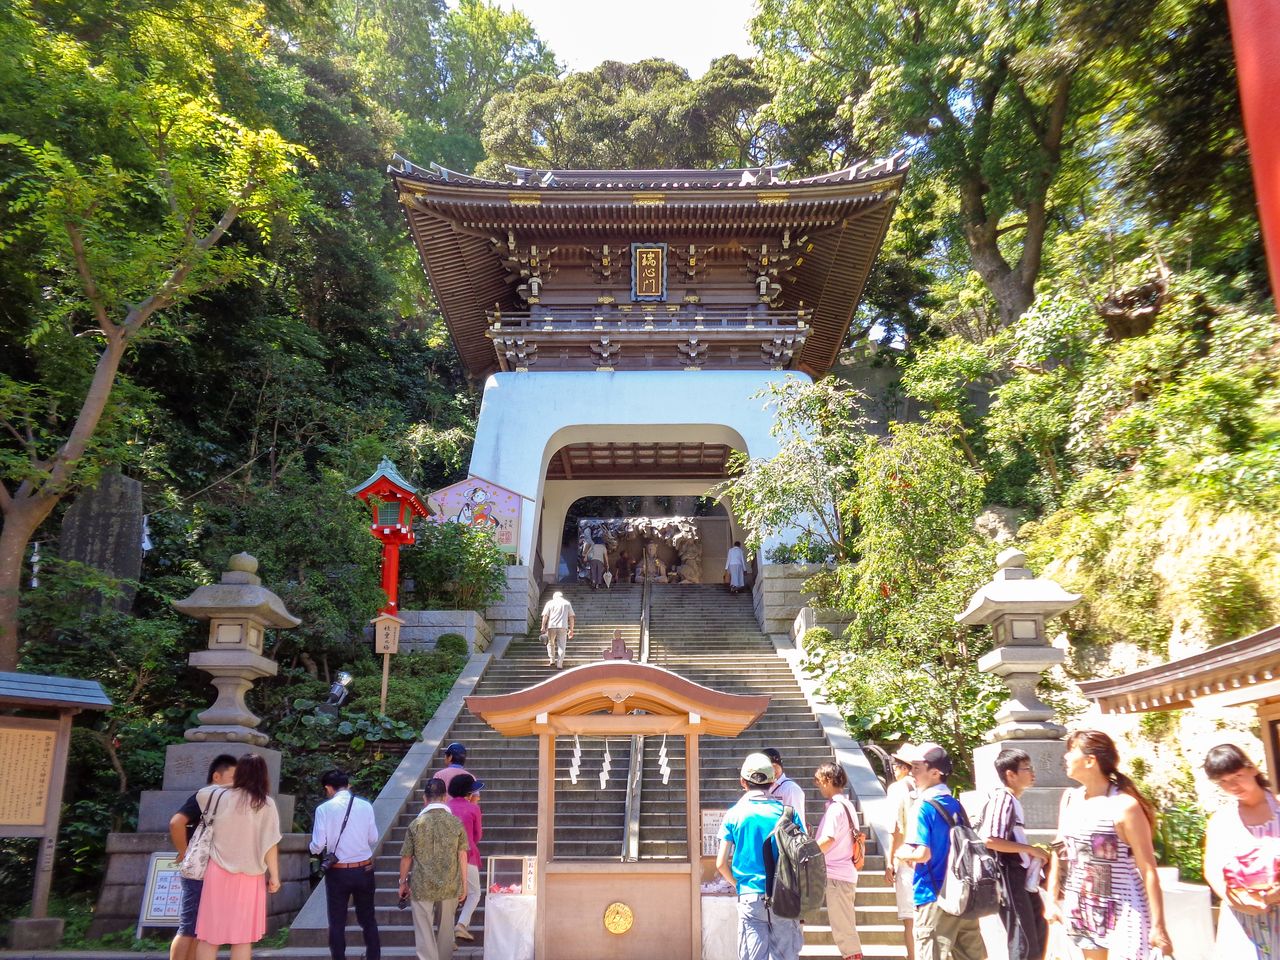 Ворота храма Эносима призваны напоминать мифический Рюгудзё, подводный дворец царя-дракона из японского фольклора (предоставлено святилищем Эносима)